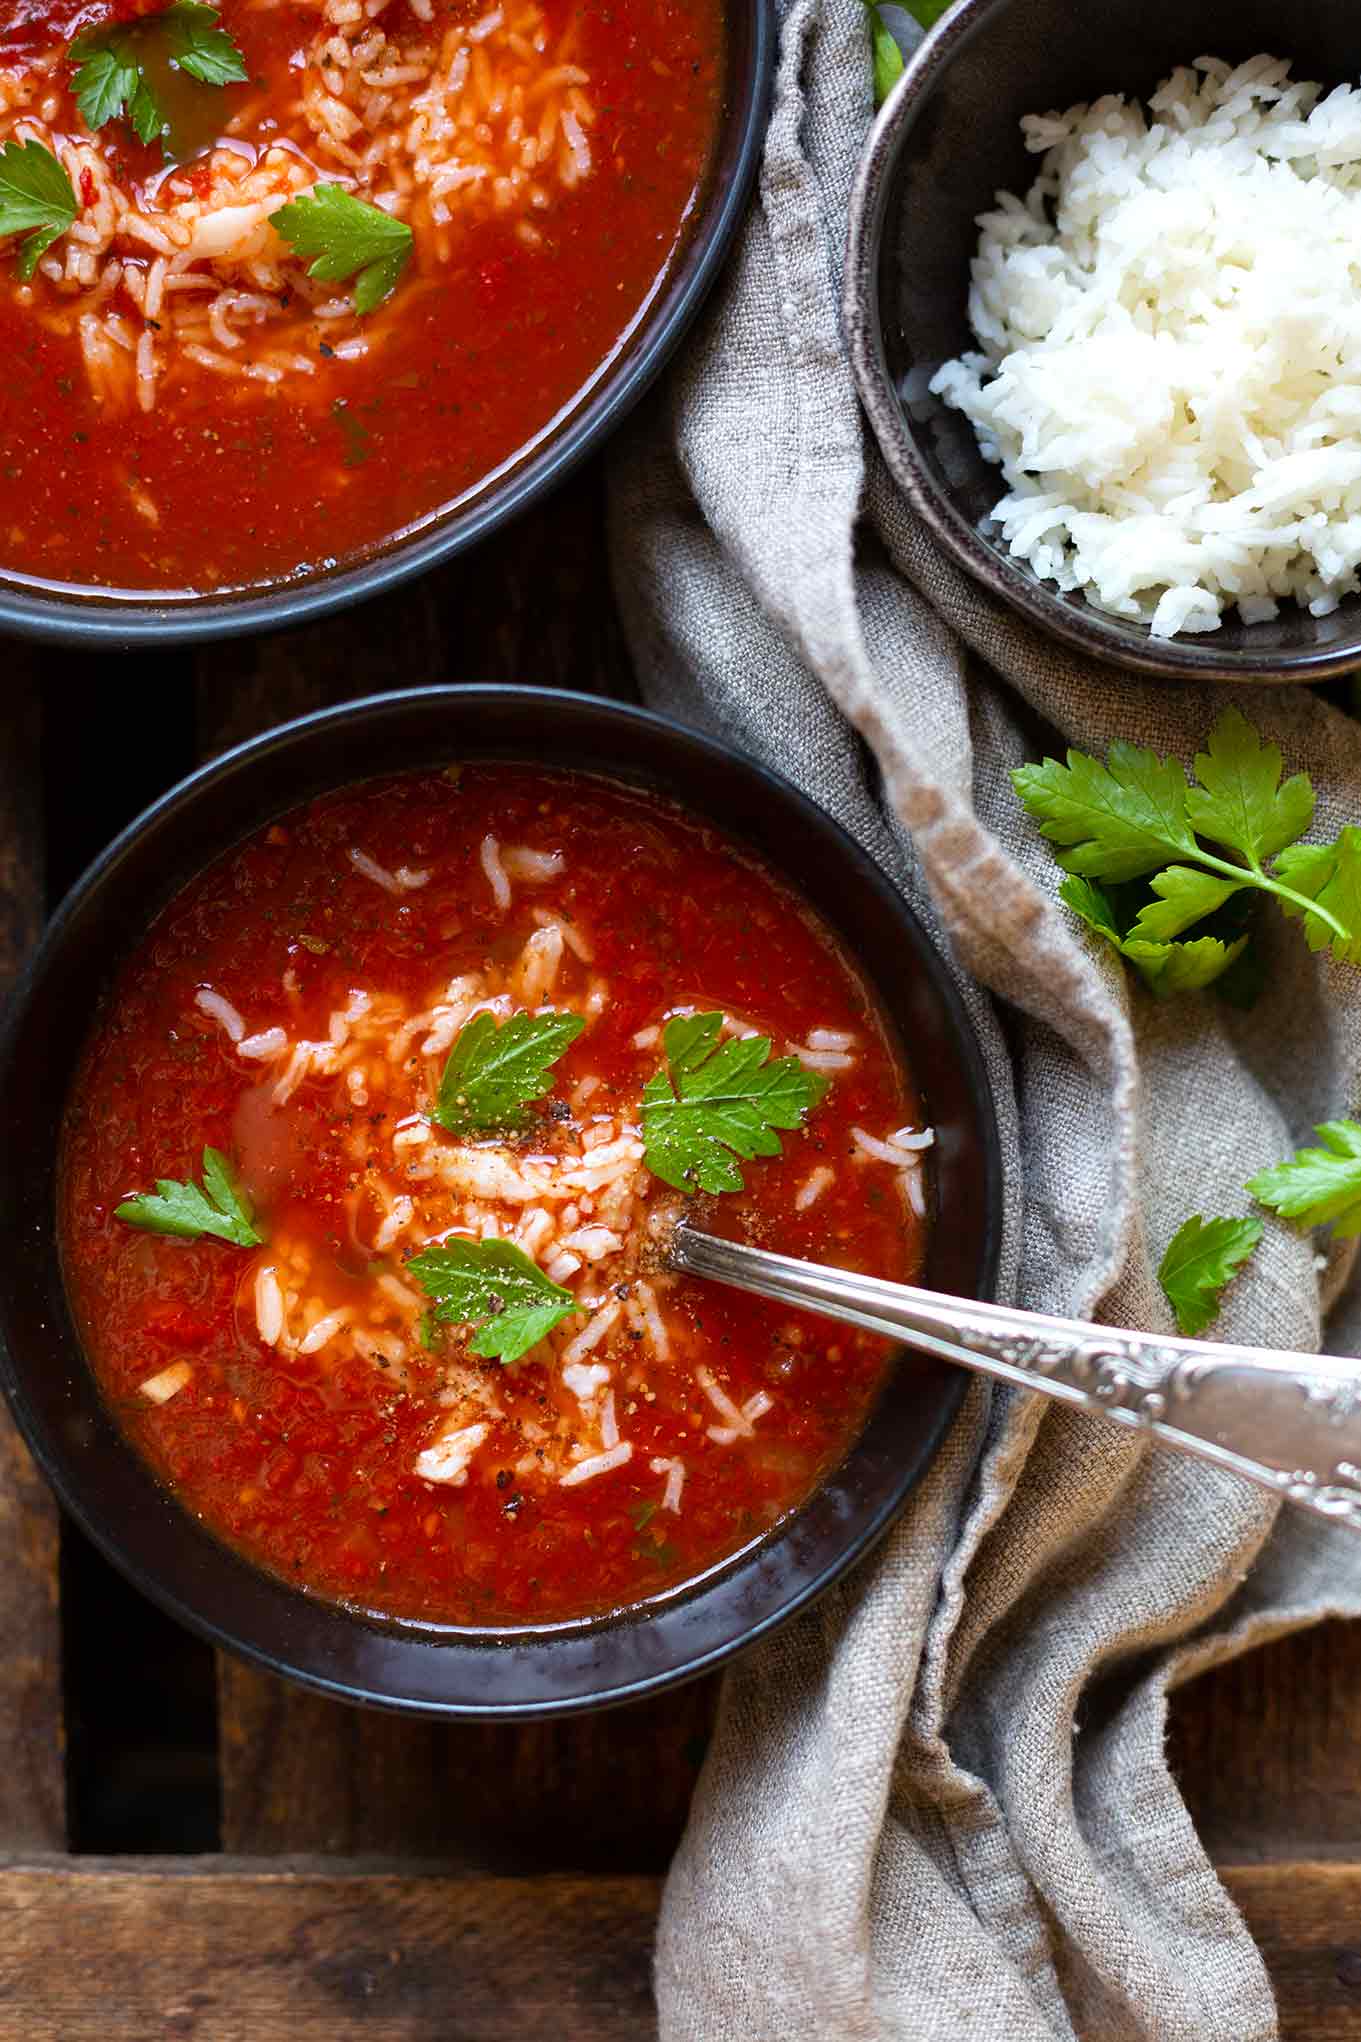 Tomatensuppe mit Reis - steht in nur 20 Minuten auf dem Tisch, ist herzhaft, würzig und vollgepackt mit guten Zutaten aus dem Vorratsschrank. Kochkarussell - dein Foodblog für schnelle und einfache Feierabendrezepte.